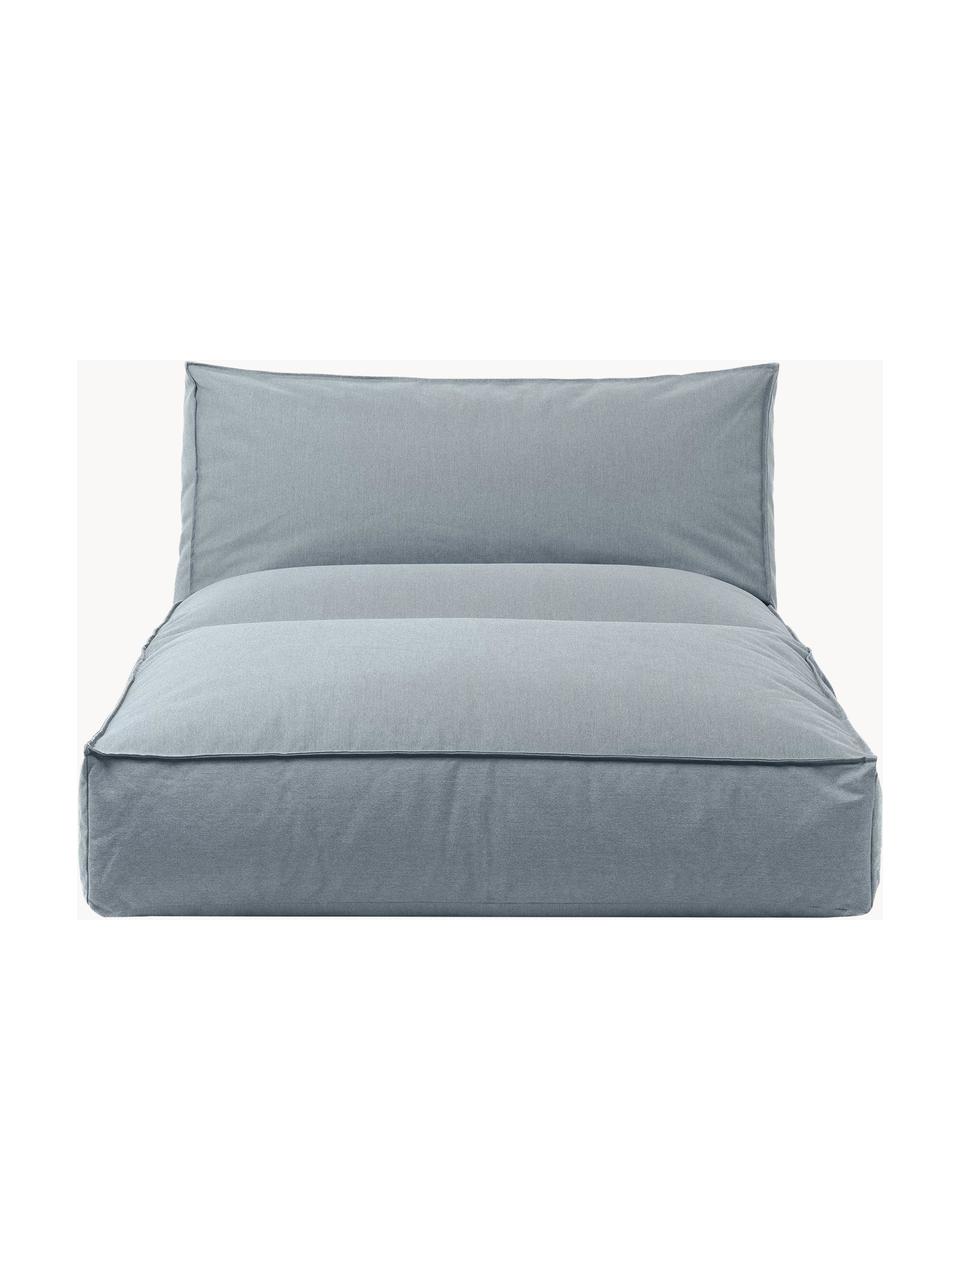 Zewnętrzne łóżko dzienne Stay, Tapicerka: 100% poliester odporny na, Szaroniebieska tkanina, 80 x 190 cm